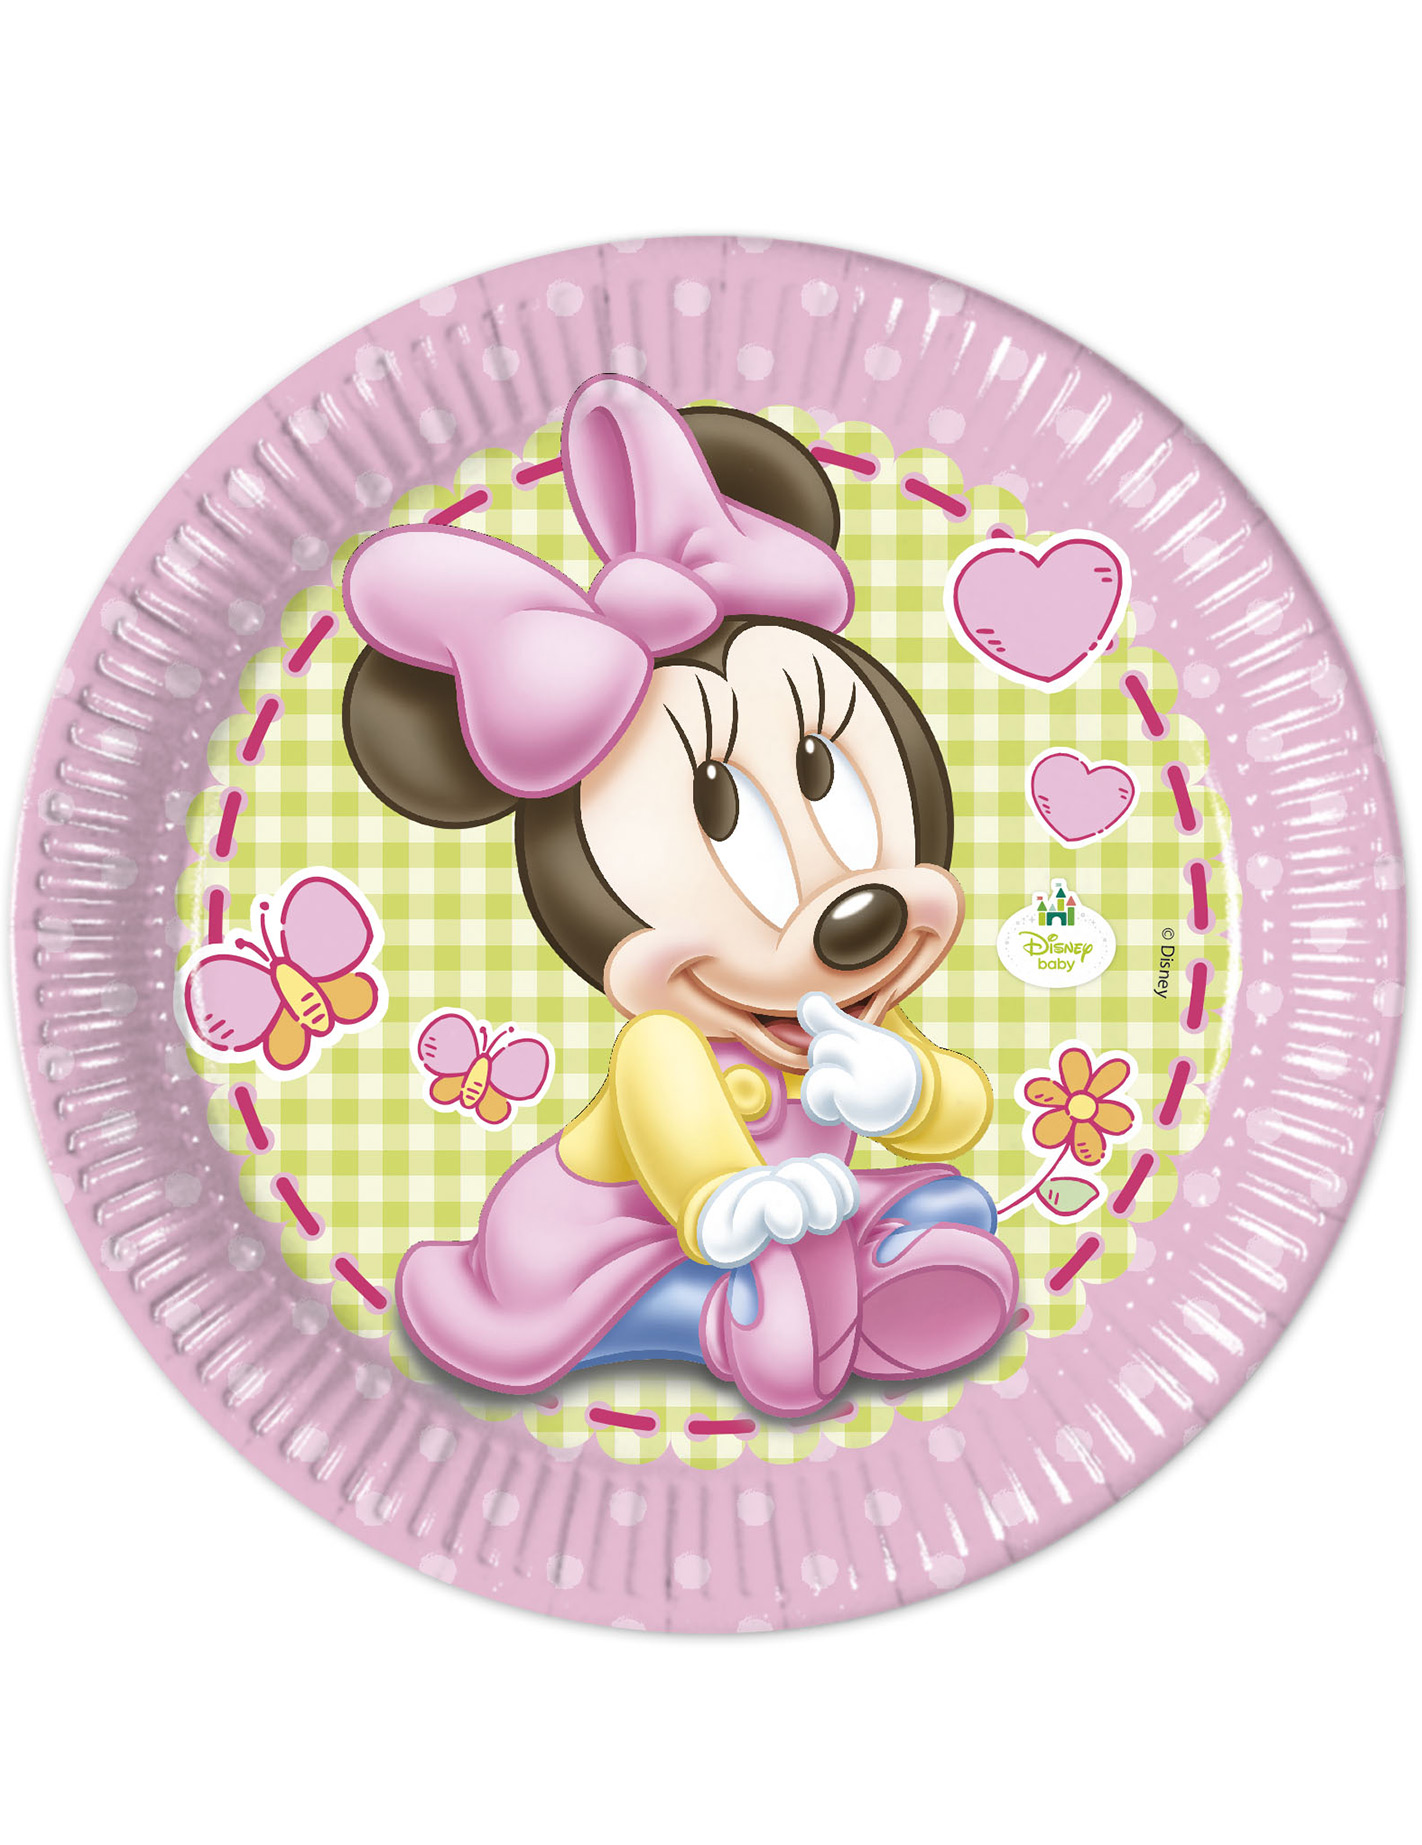 8 Grandes assiettes en carton Jetables Bébé Minnie Disney 23 cm